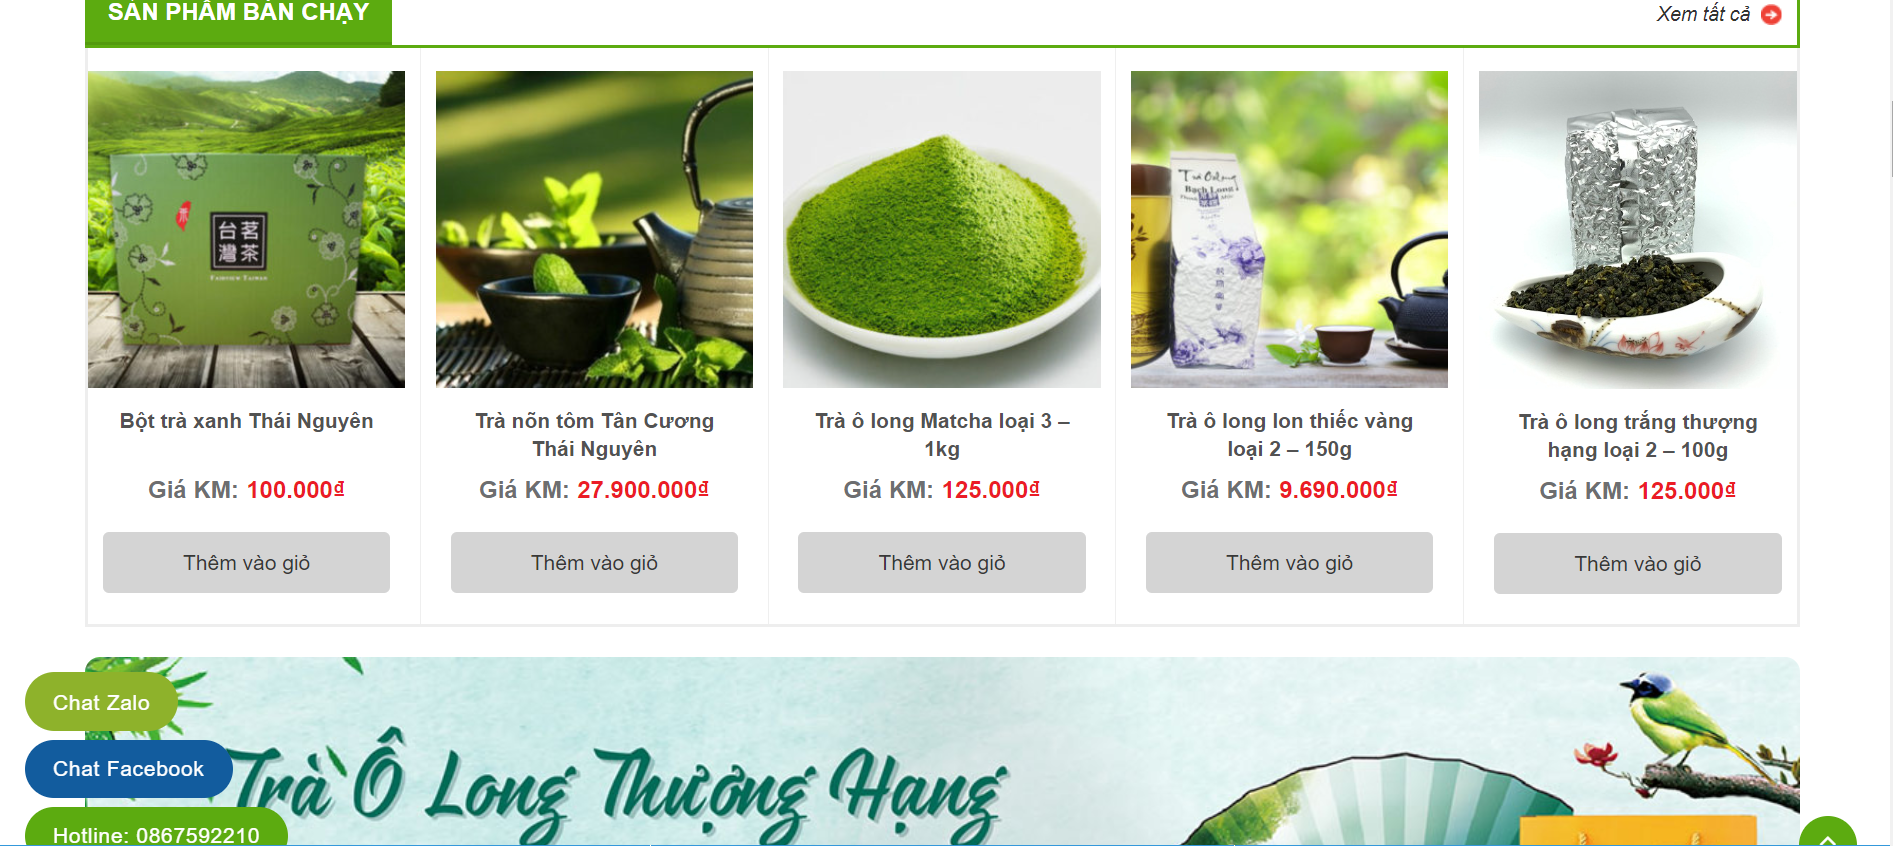 Thiết kế webisite bán trà xanh đa dạng sản phẩm 